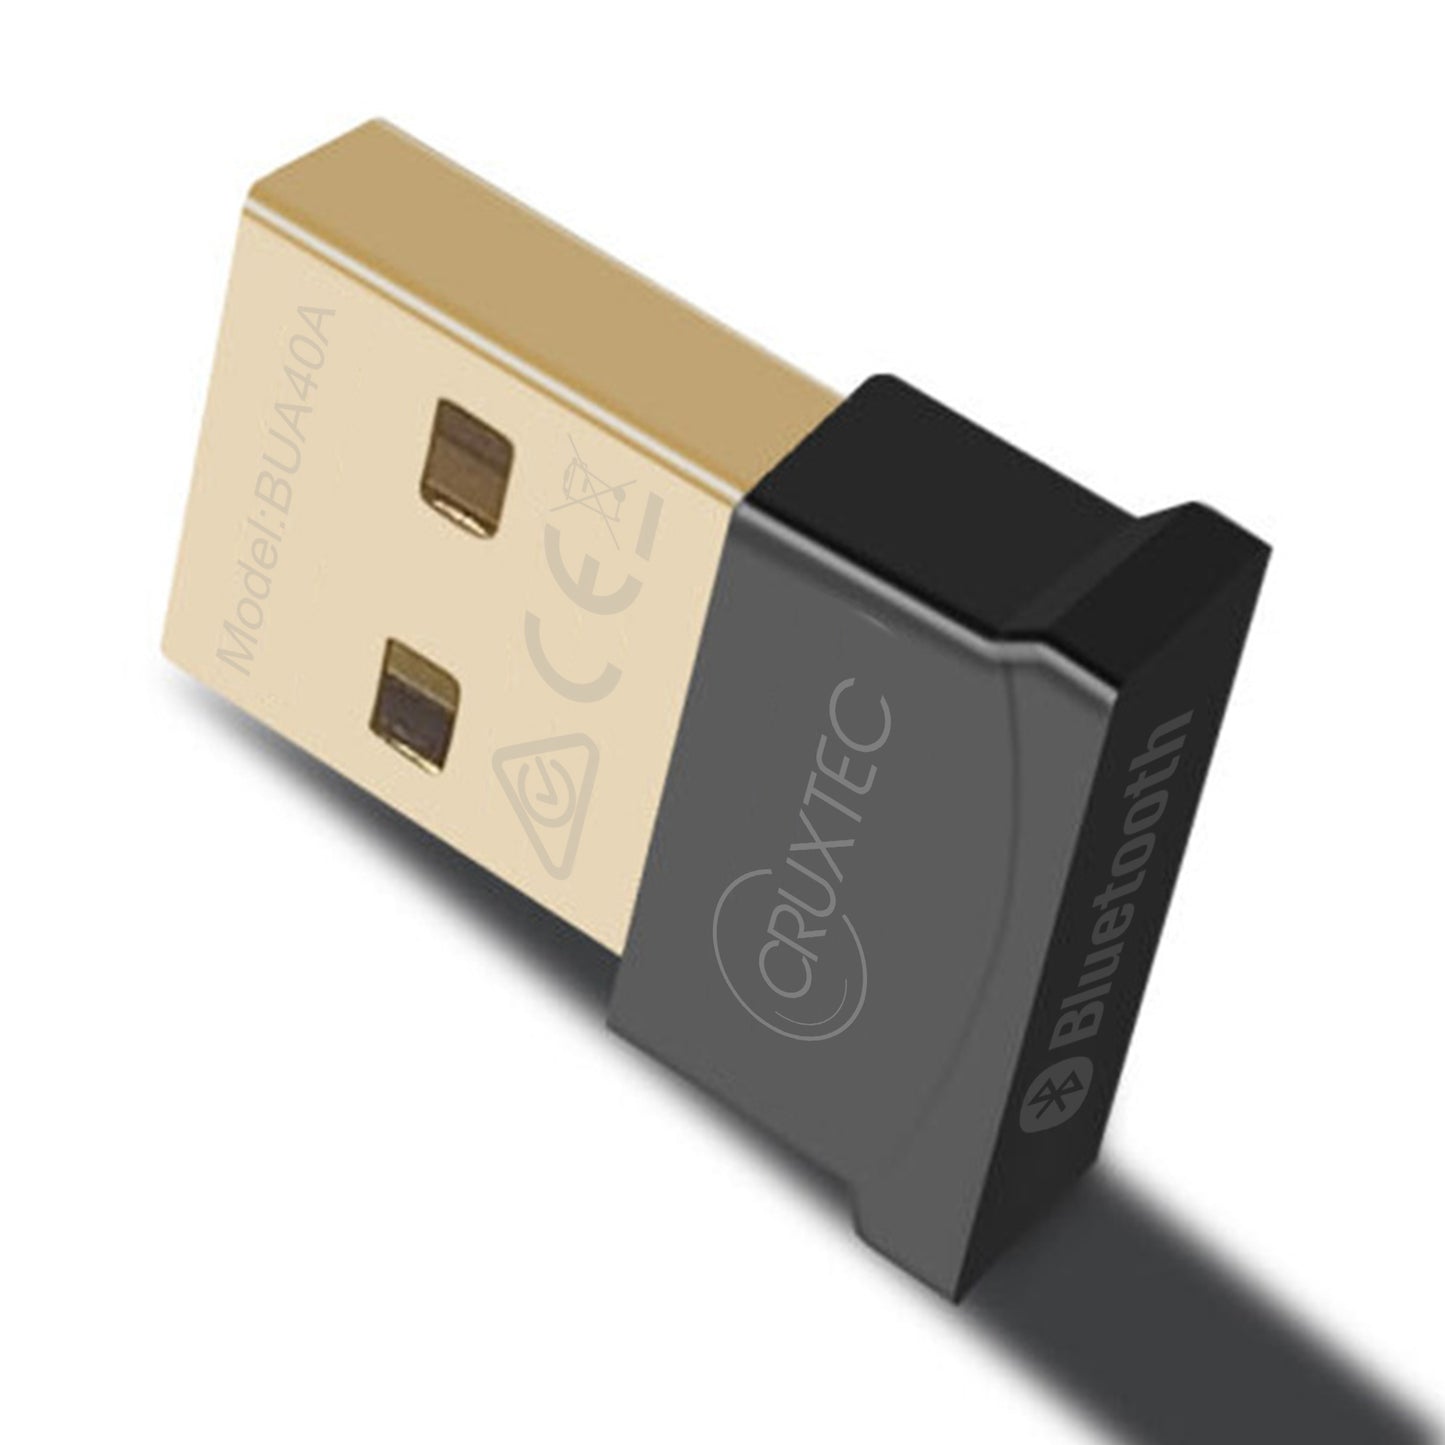 Cruxtec Bluetooth 4.0 Nano USB Adapter BQB Certified